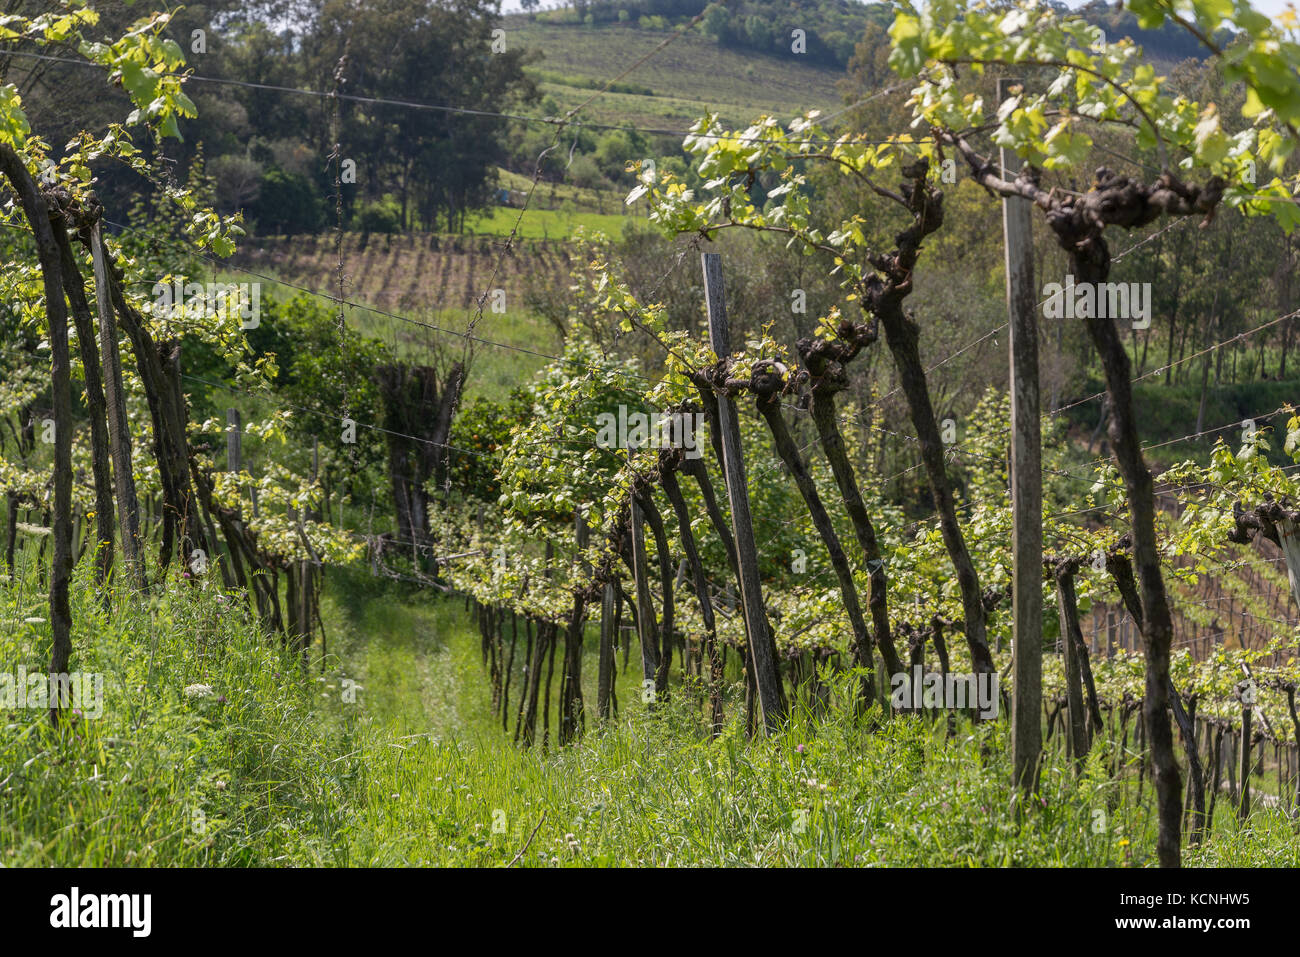 vineyards of Casa Valduga in Vale dos Vinhedos, Grande do Sul, Brazil Stock Photo